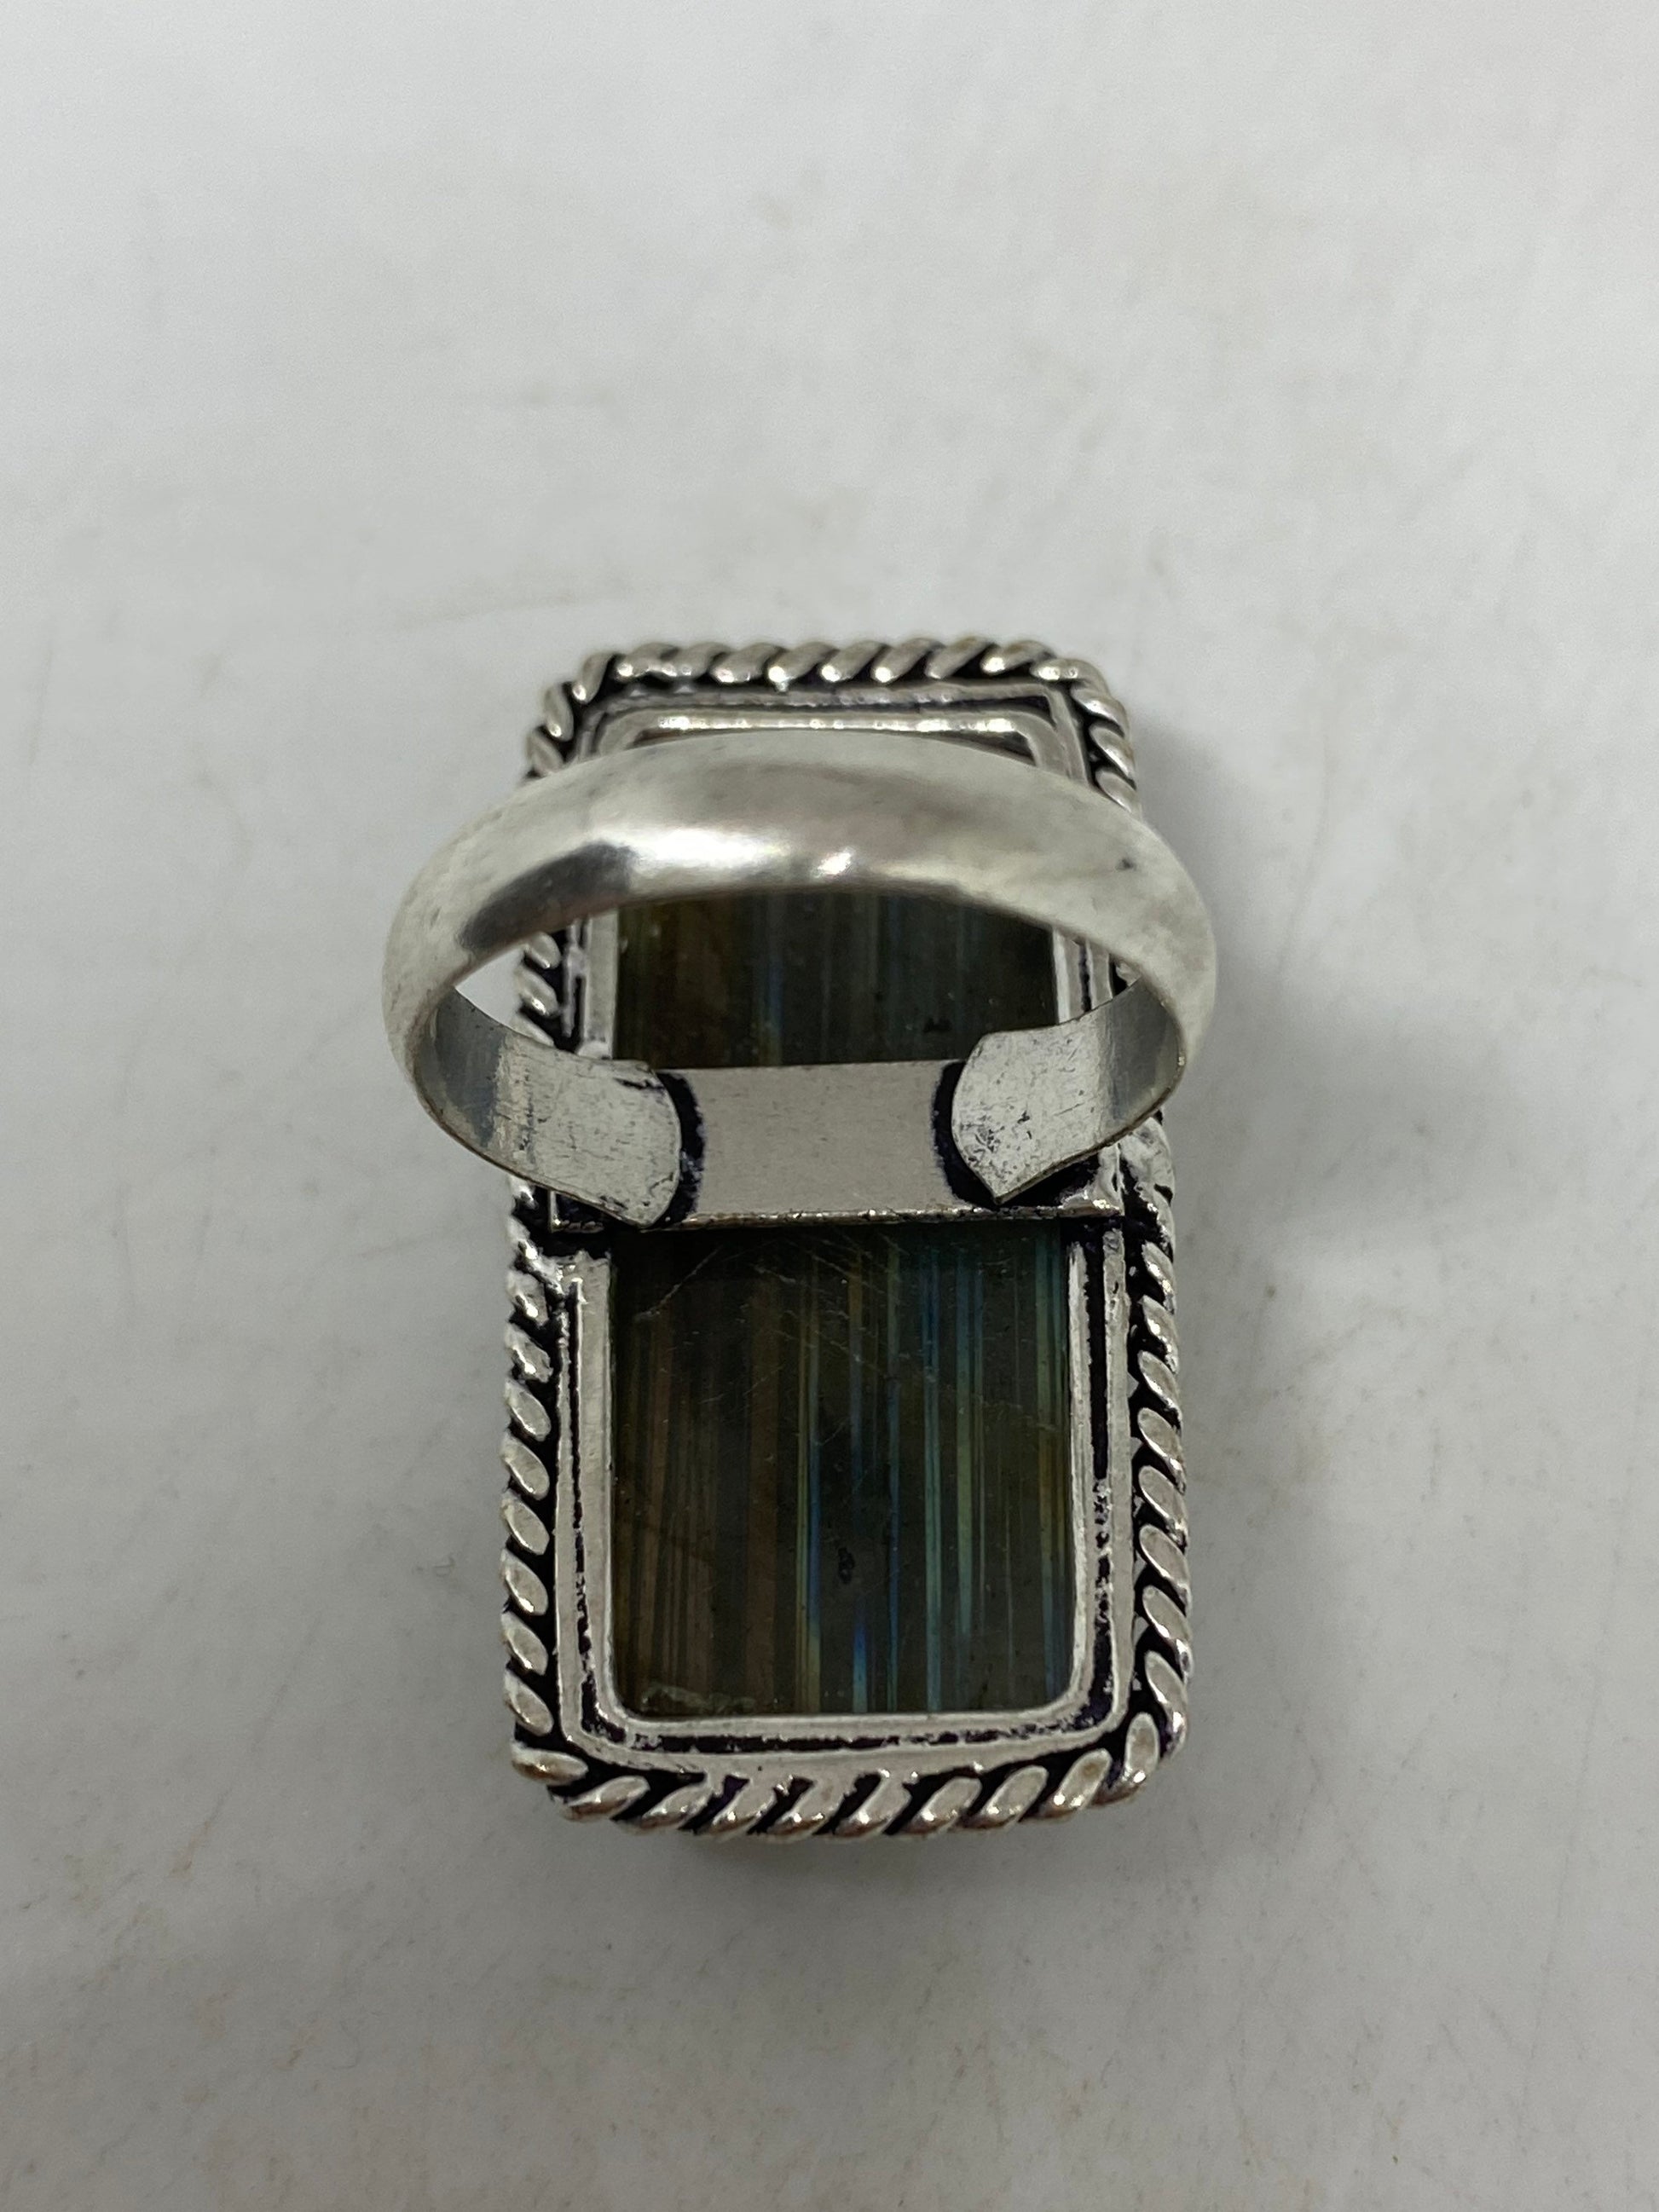 Vintage Large Blue Green Labradorite Stone Silver Ring